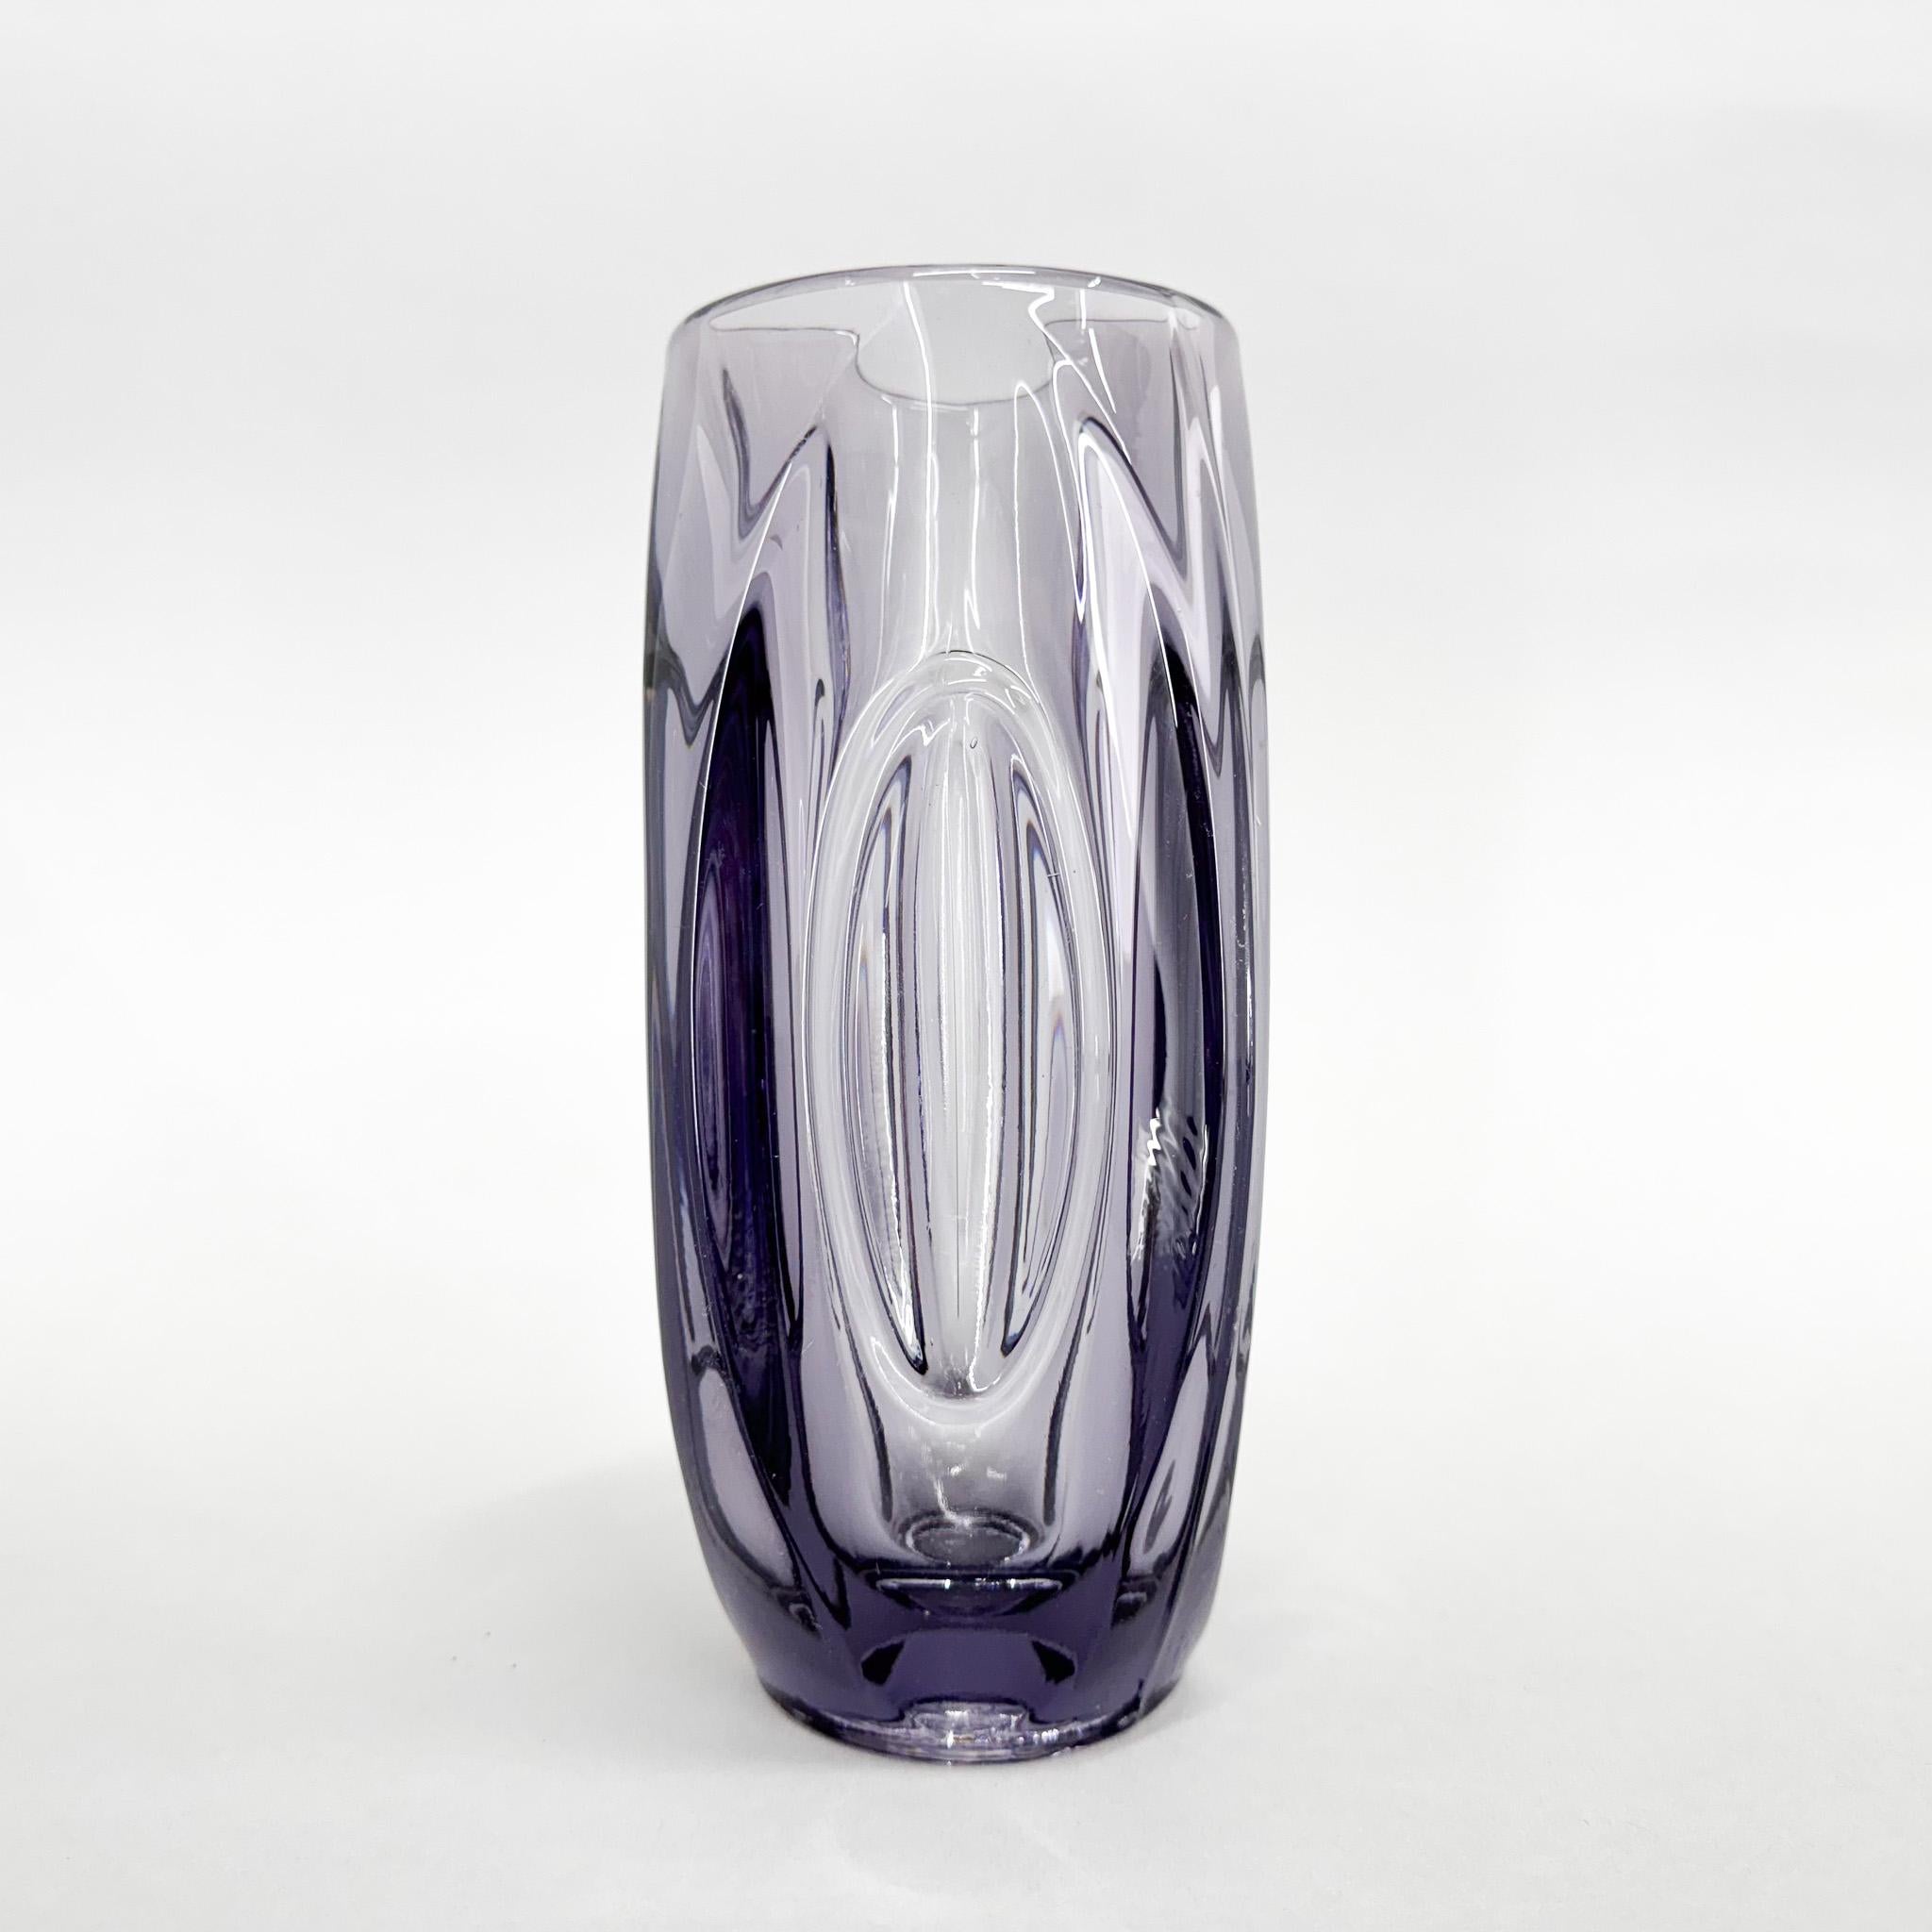 Violette Vase aus Pressglas, entworfen von Rudolf Schrötter um 1955 und hergestellt von der Glashütte Rosice (Teil der SkLO Union) in der ehemaligen Tschechoslowakei. Sehr ungewöhnlich in dieser Größe.